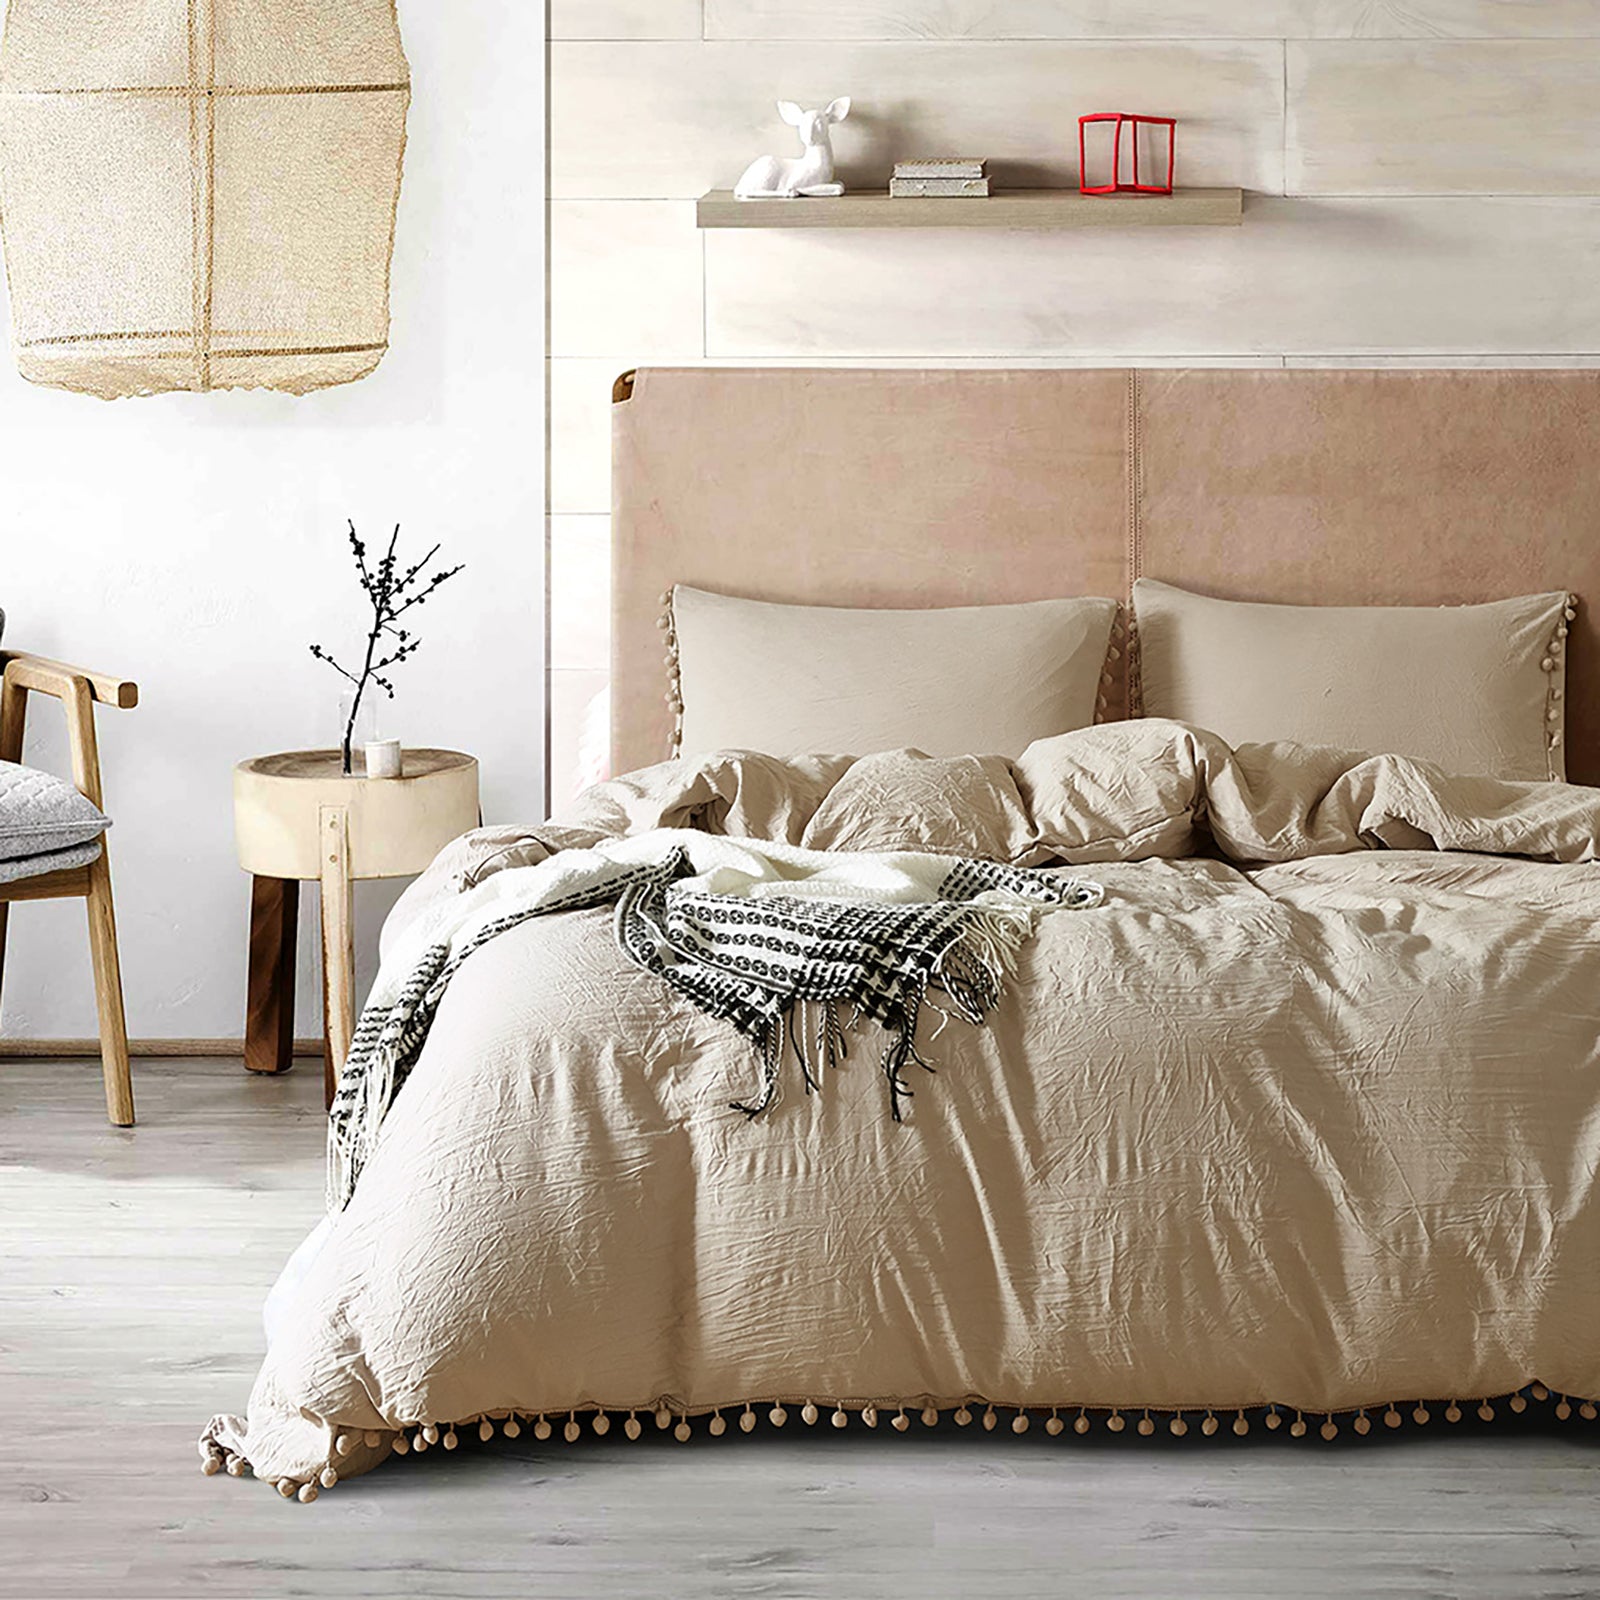 Bed Linen + Décor